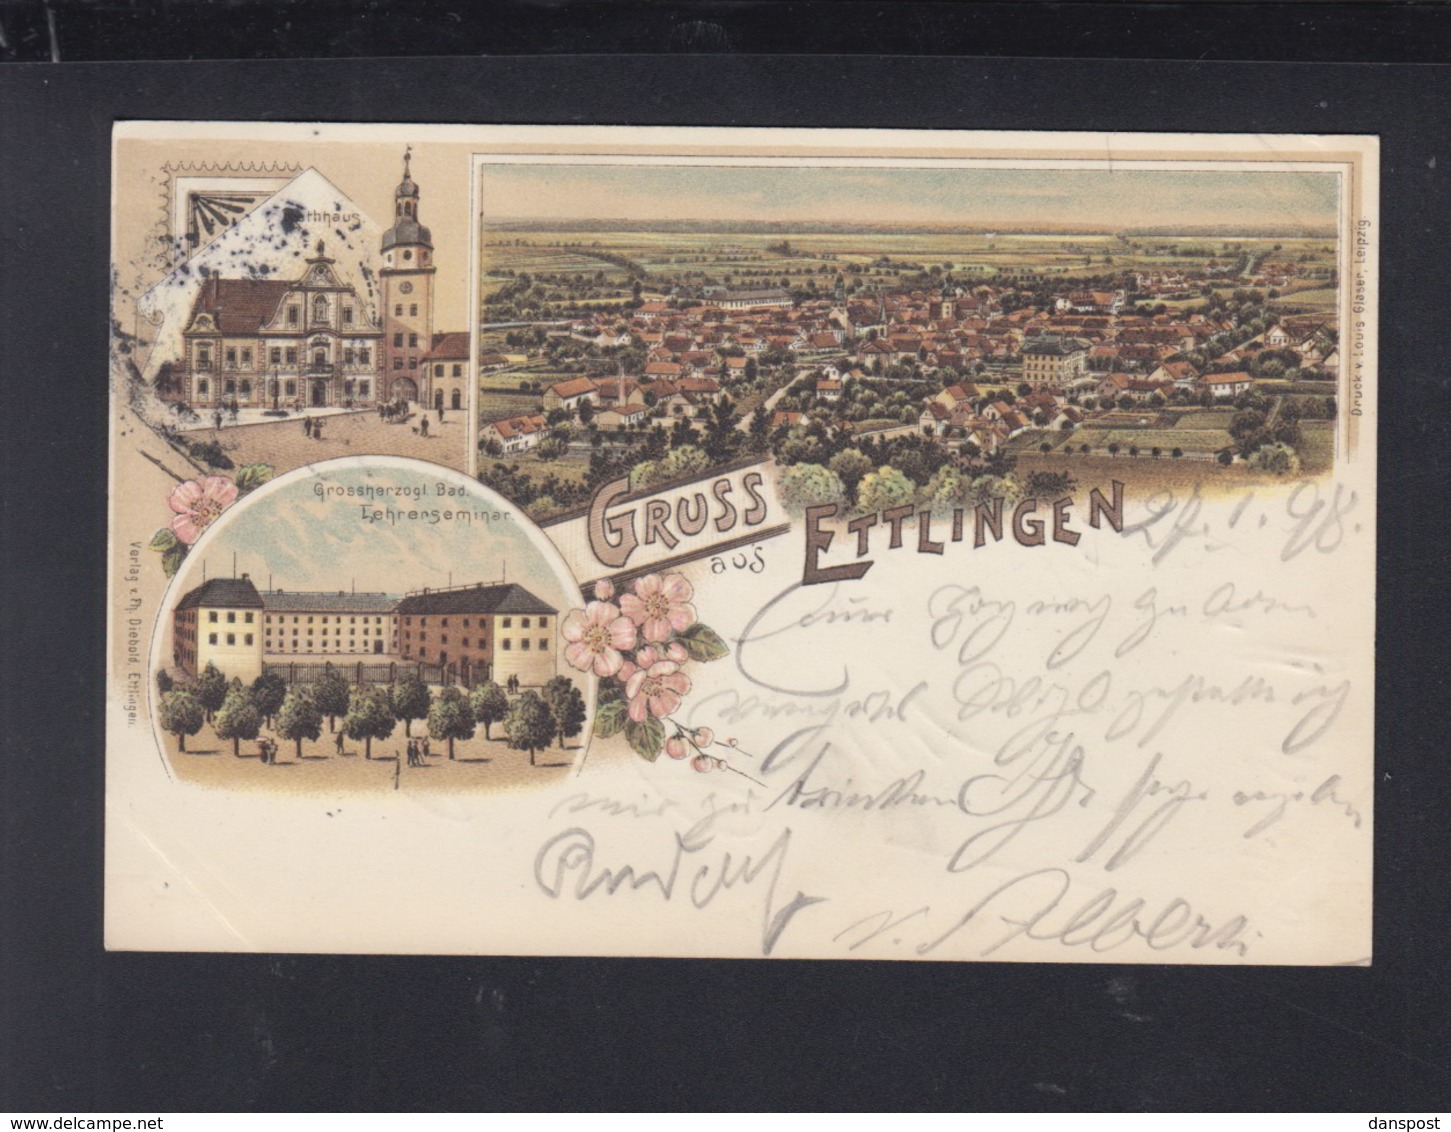 Württemberg Litho-AK Gruß Aus Ettlingen Lehrerseminar 1898 - Ettlingen